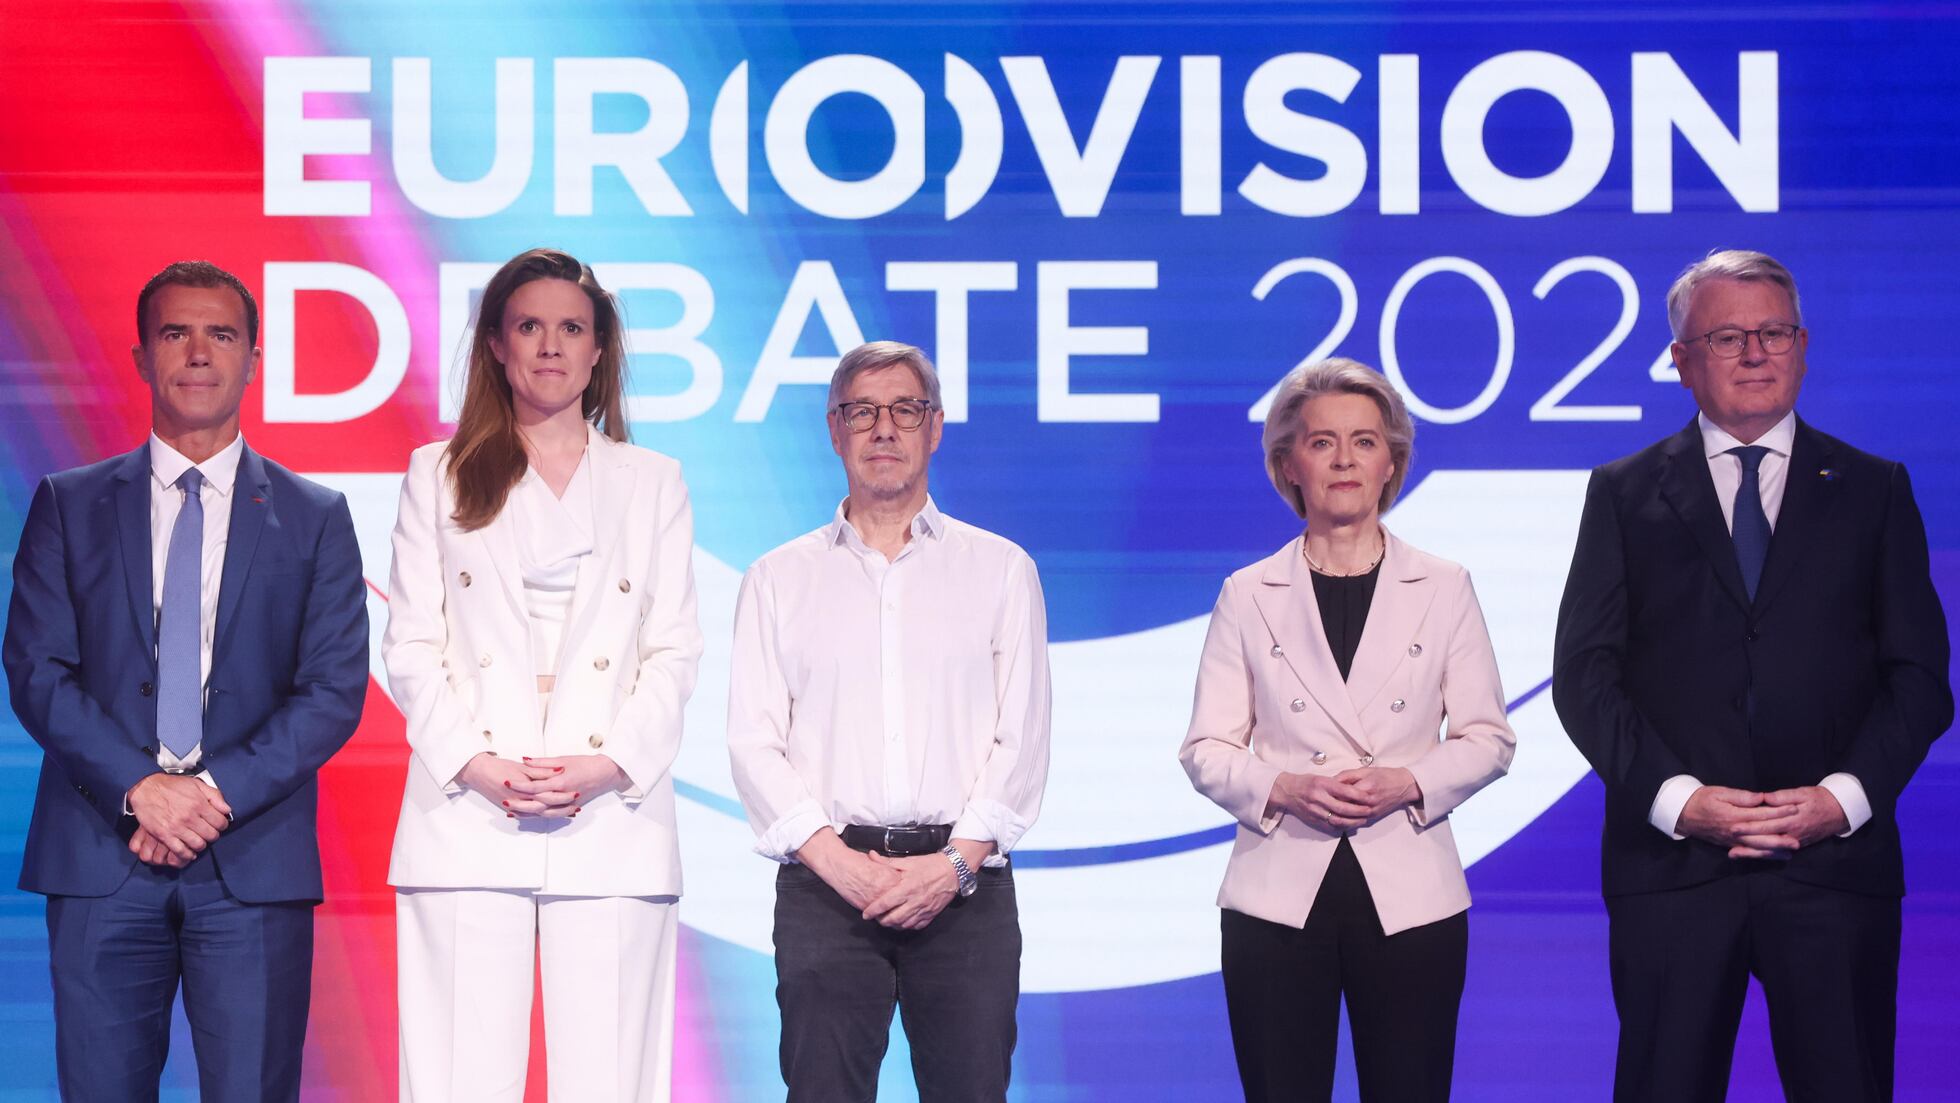 Los candidatos celebran el último debate antes de las elecciones europeas, en directo